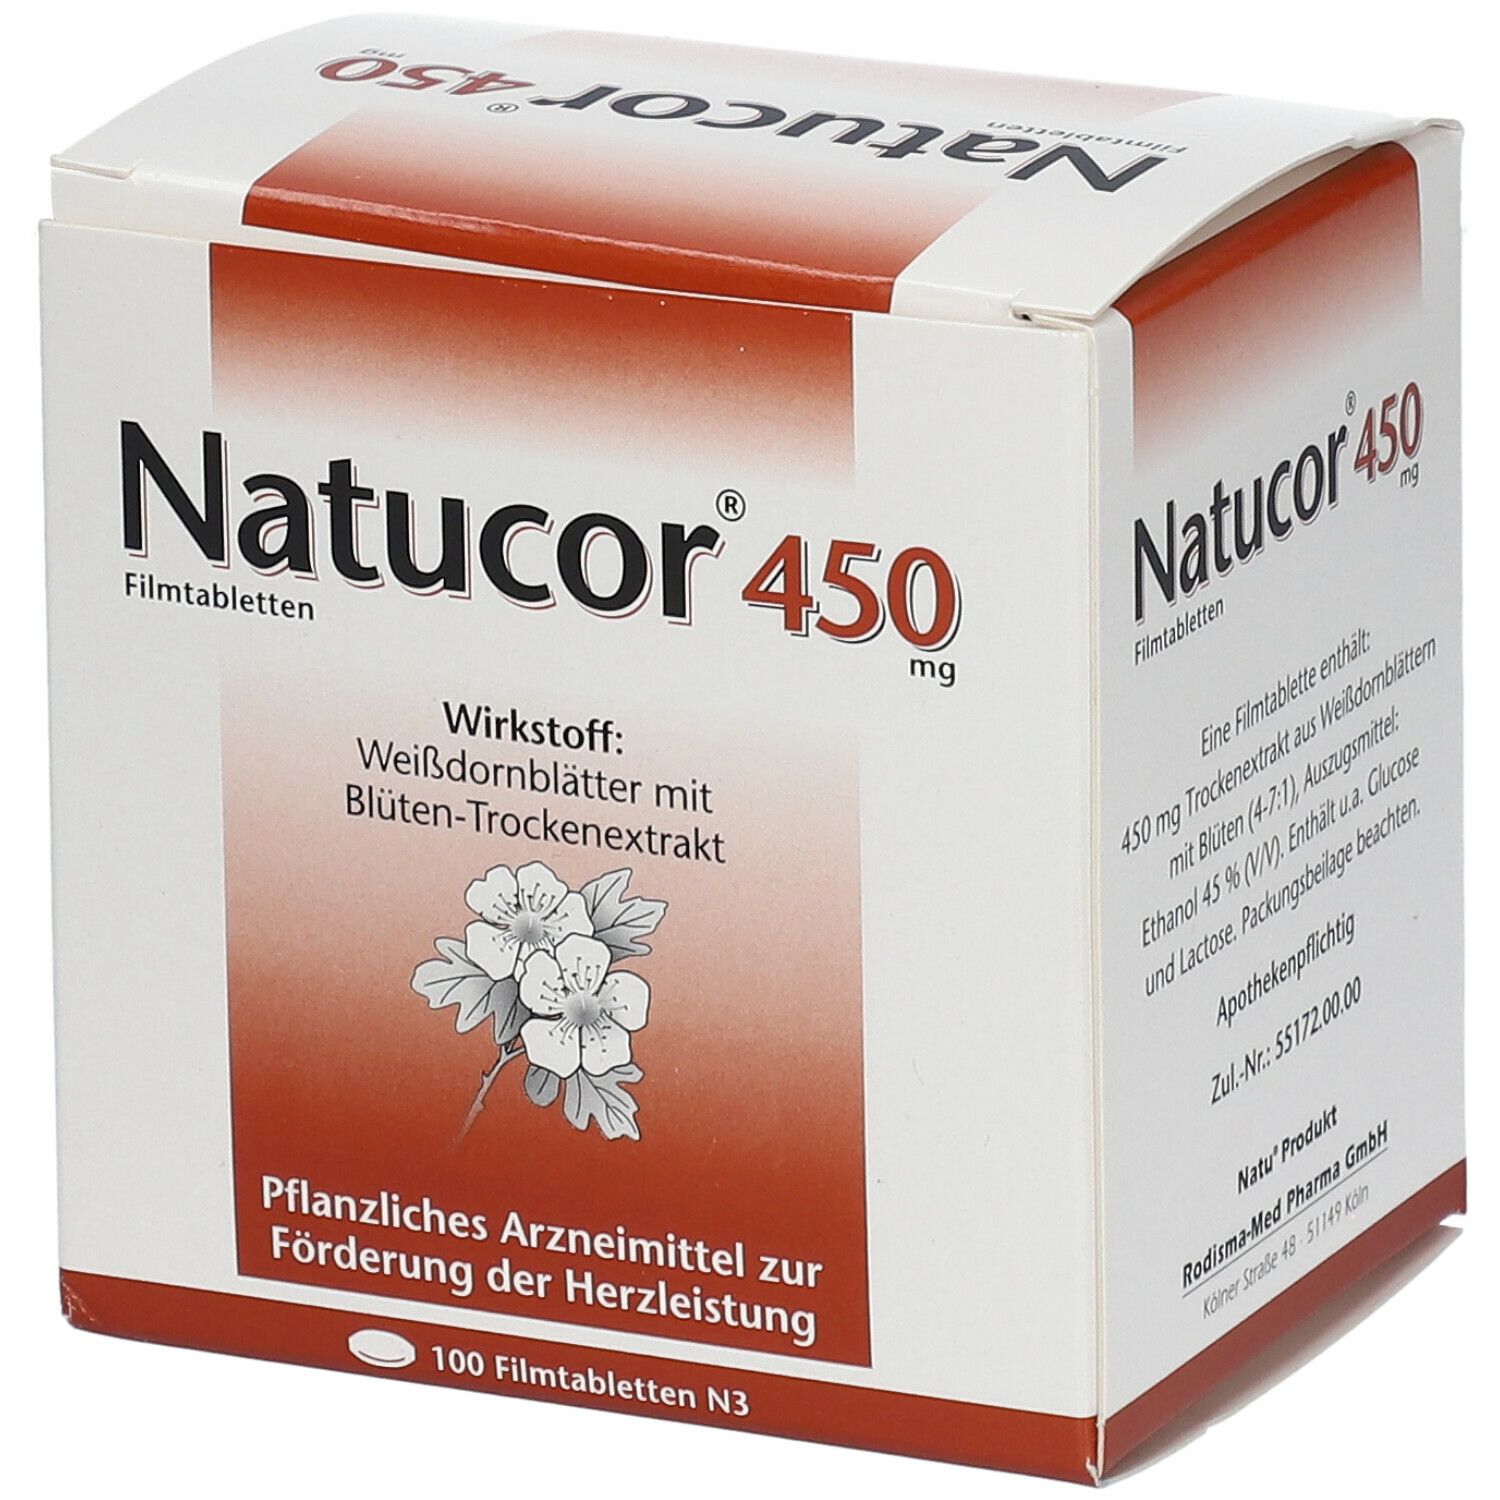 Natucor® 450 mg